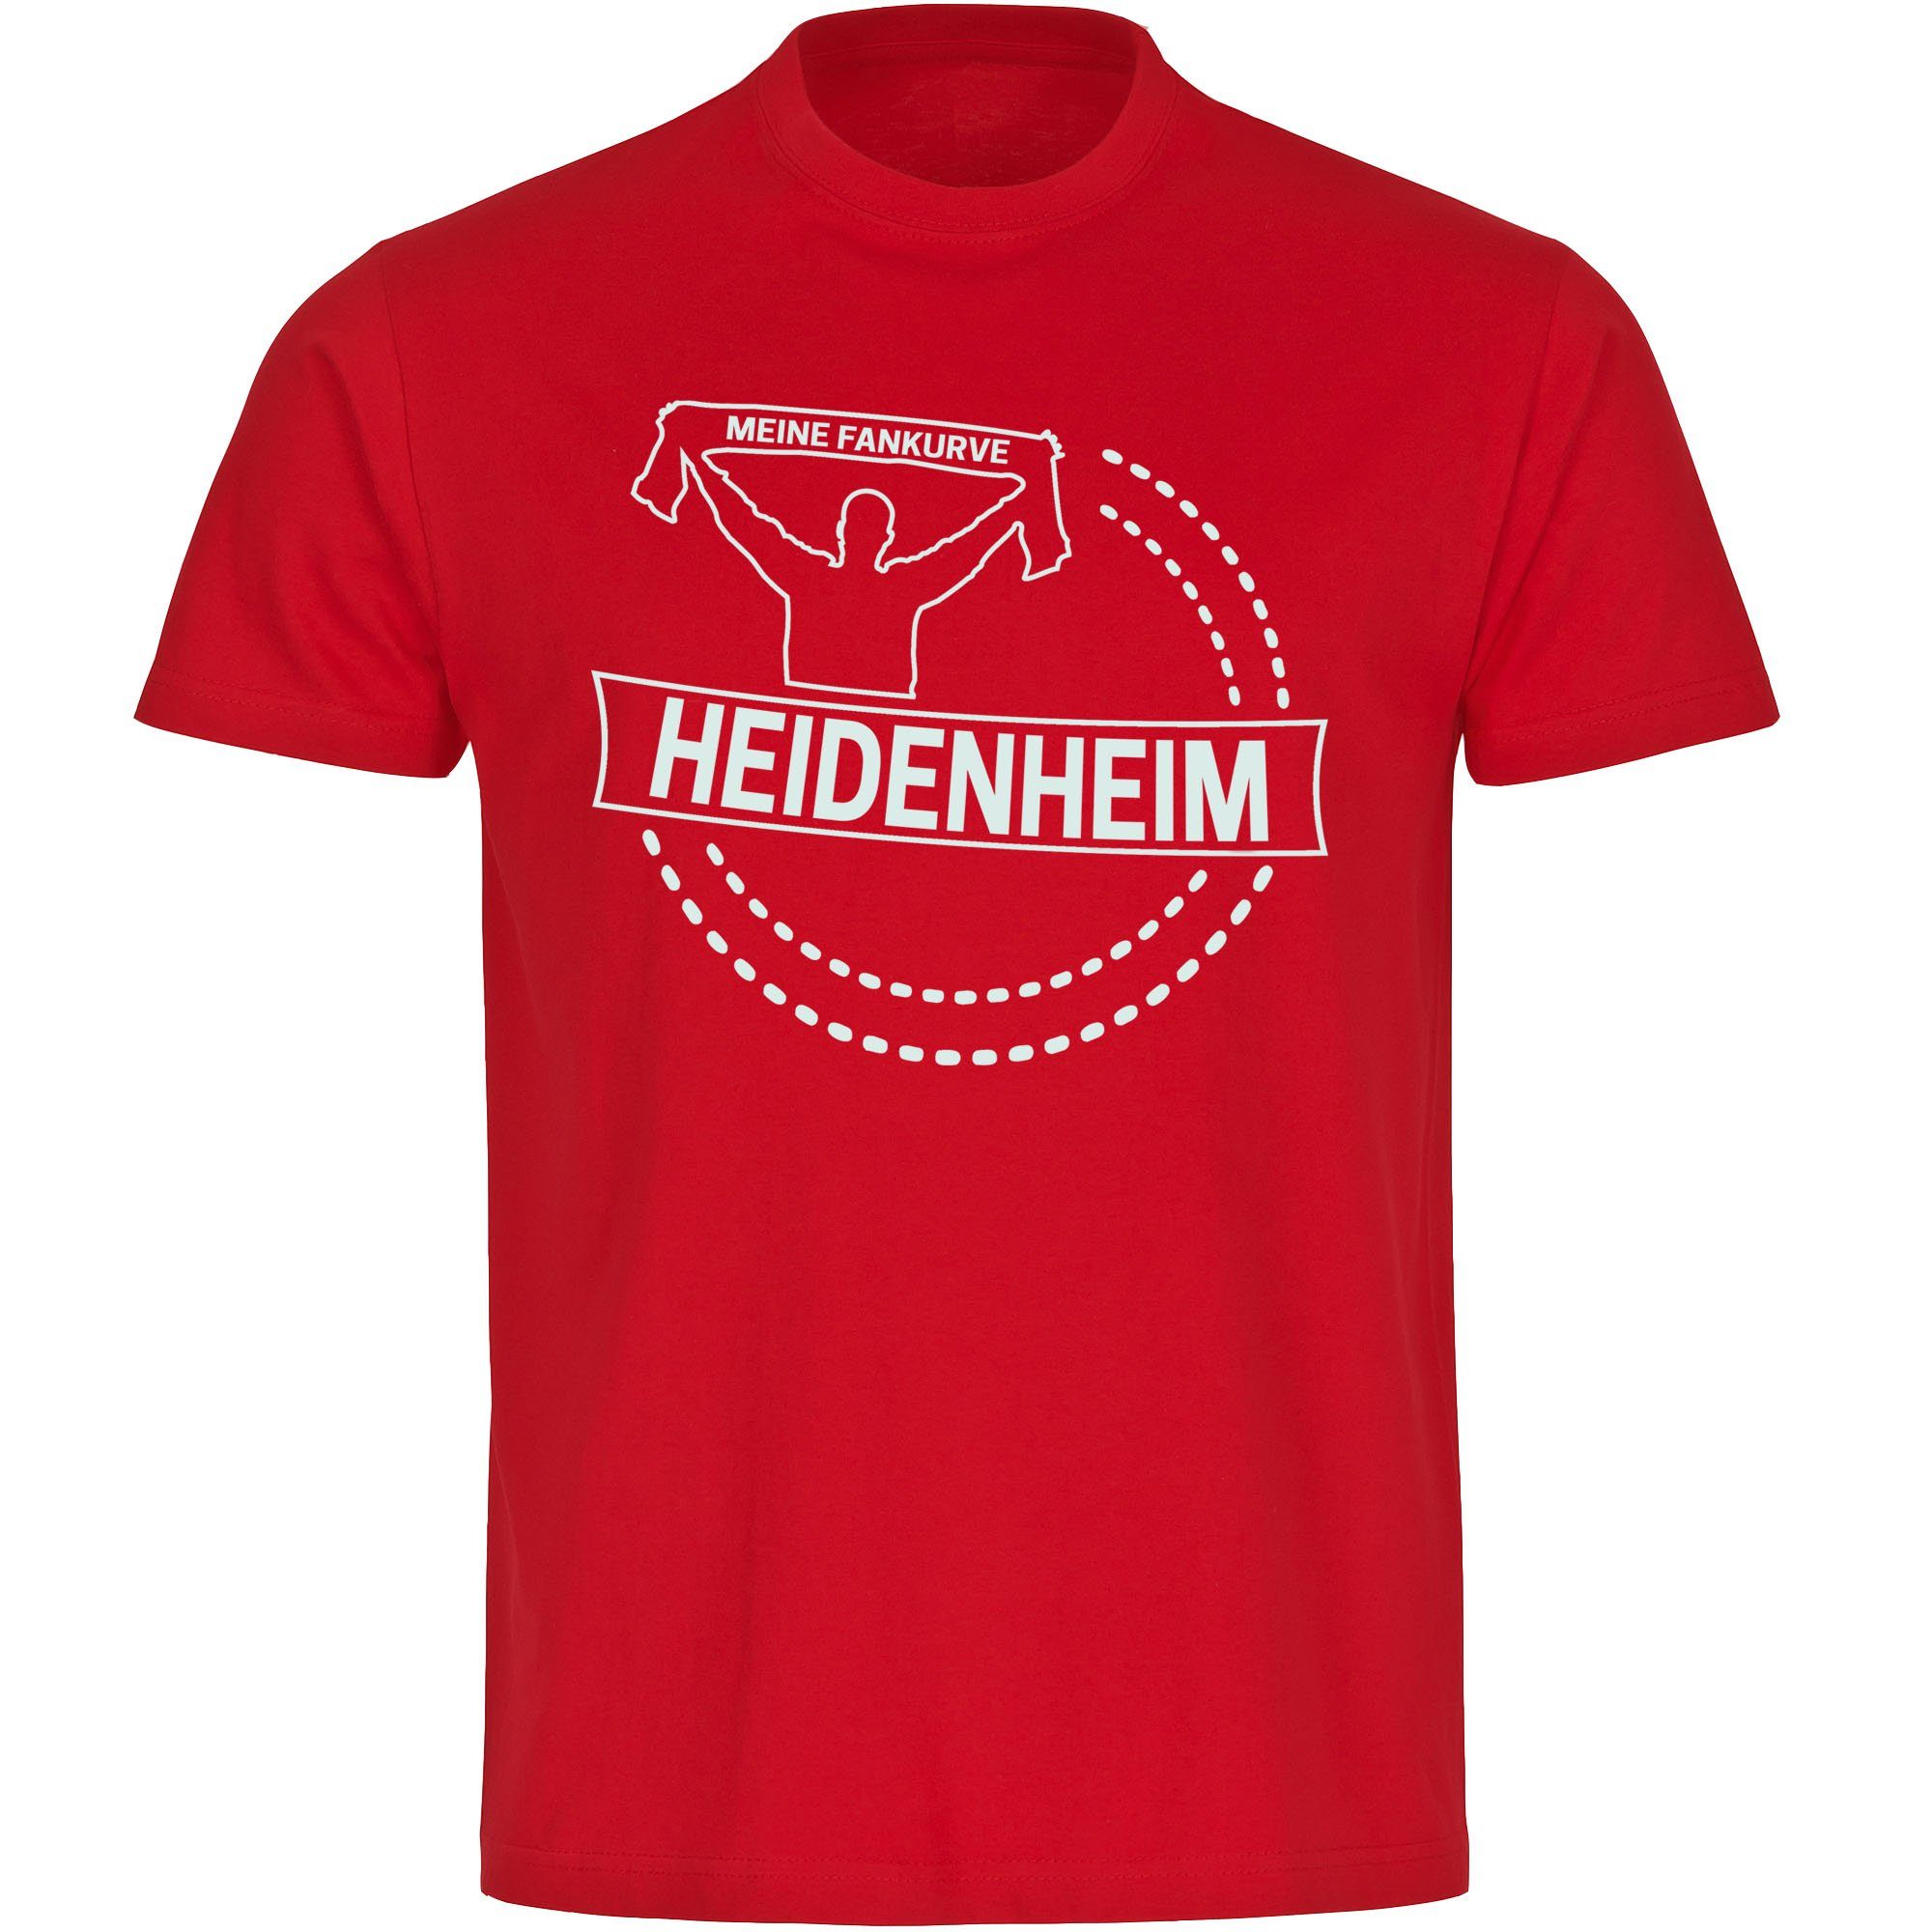 multifanshop T-Shirt Kinder Heidenheim - Meine Fankurve - Boy Girl